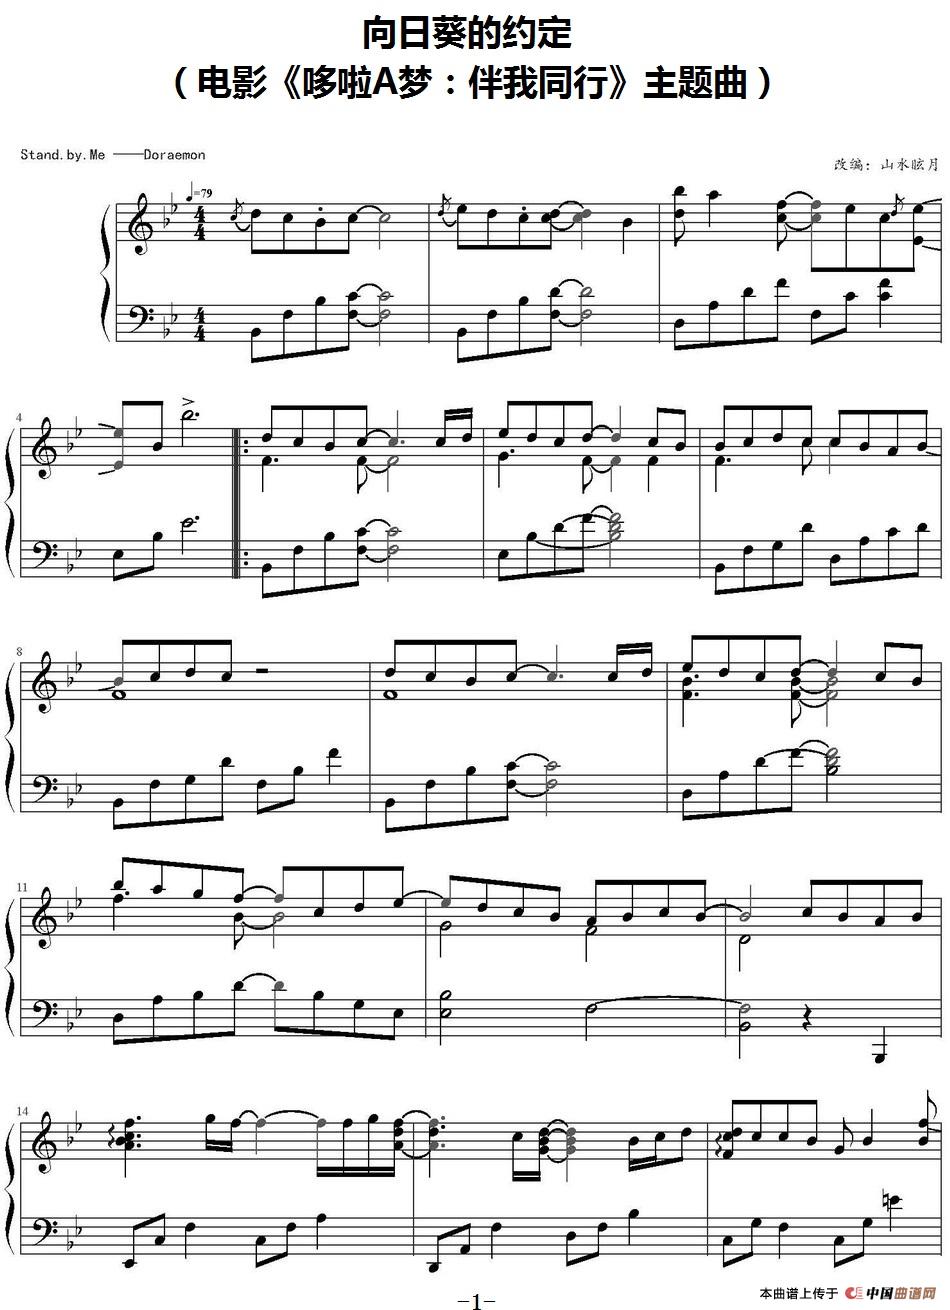 《向日葵的约定》钢琴曲谱图分享